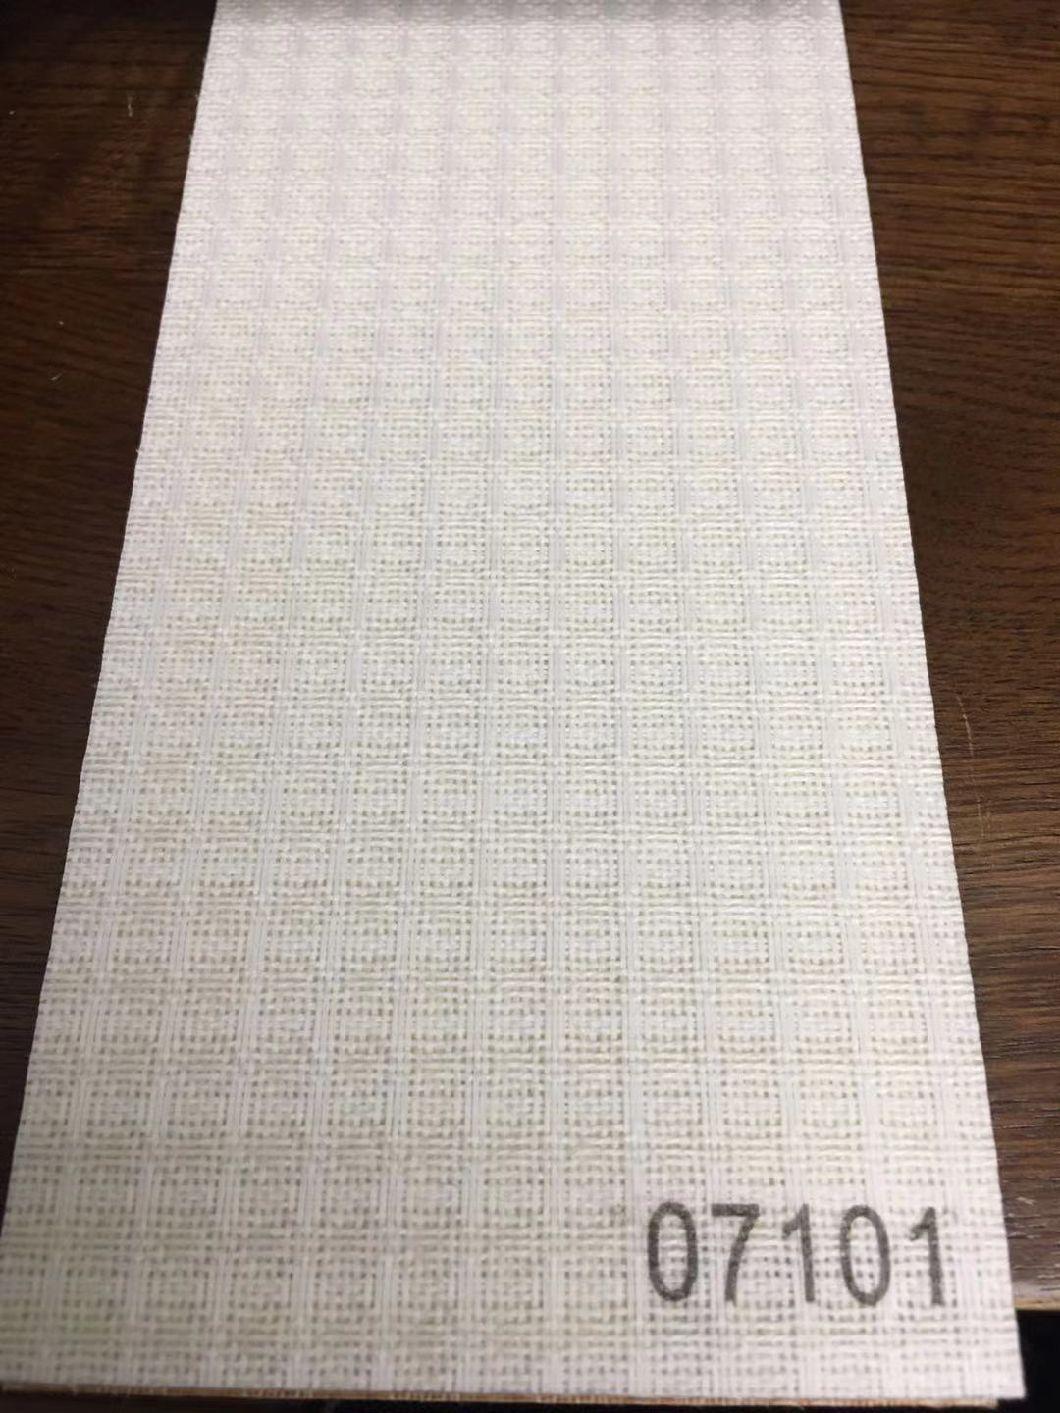 V14 Vertical Blinds Fabric